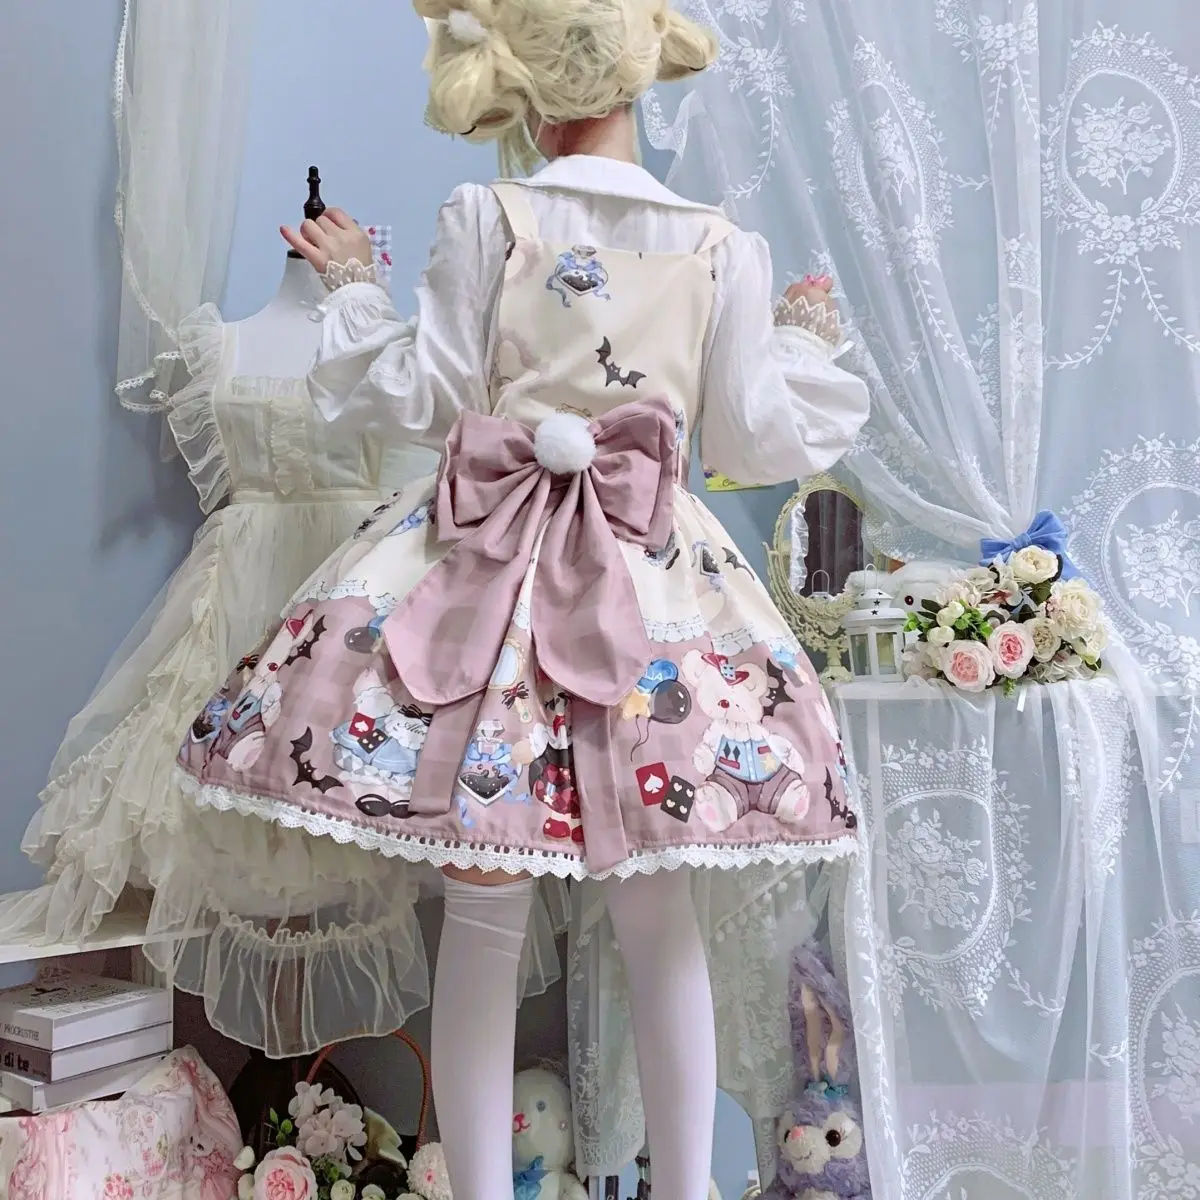 Japanische weiche Mädchen kawaii lolita jsk Kleid süße Hasen drucken süße Kleider Frauen Party Sommer Prinzessin Hosenträger Kleid